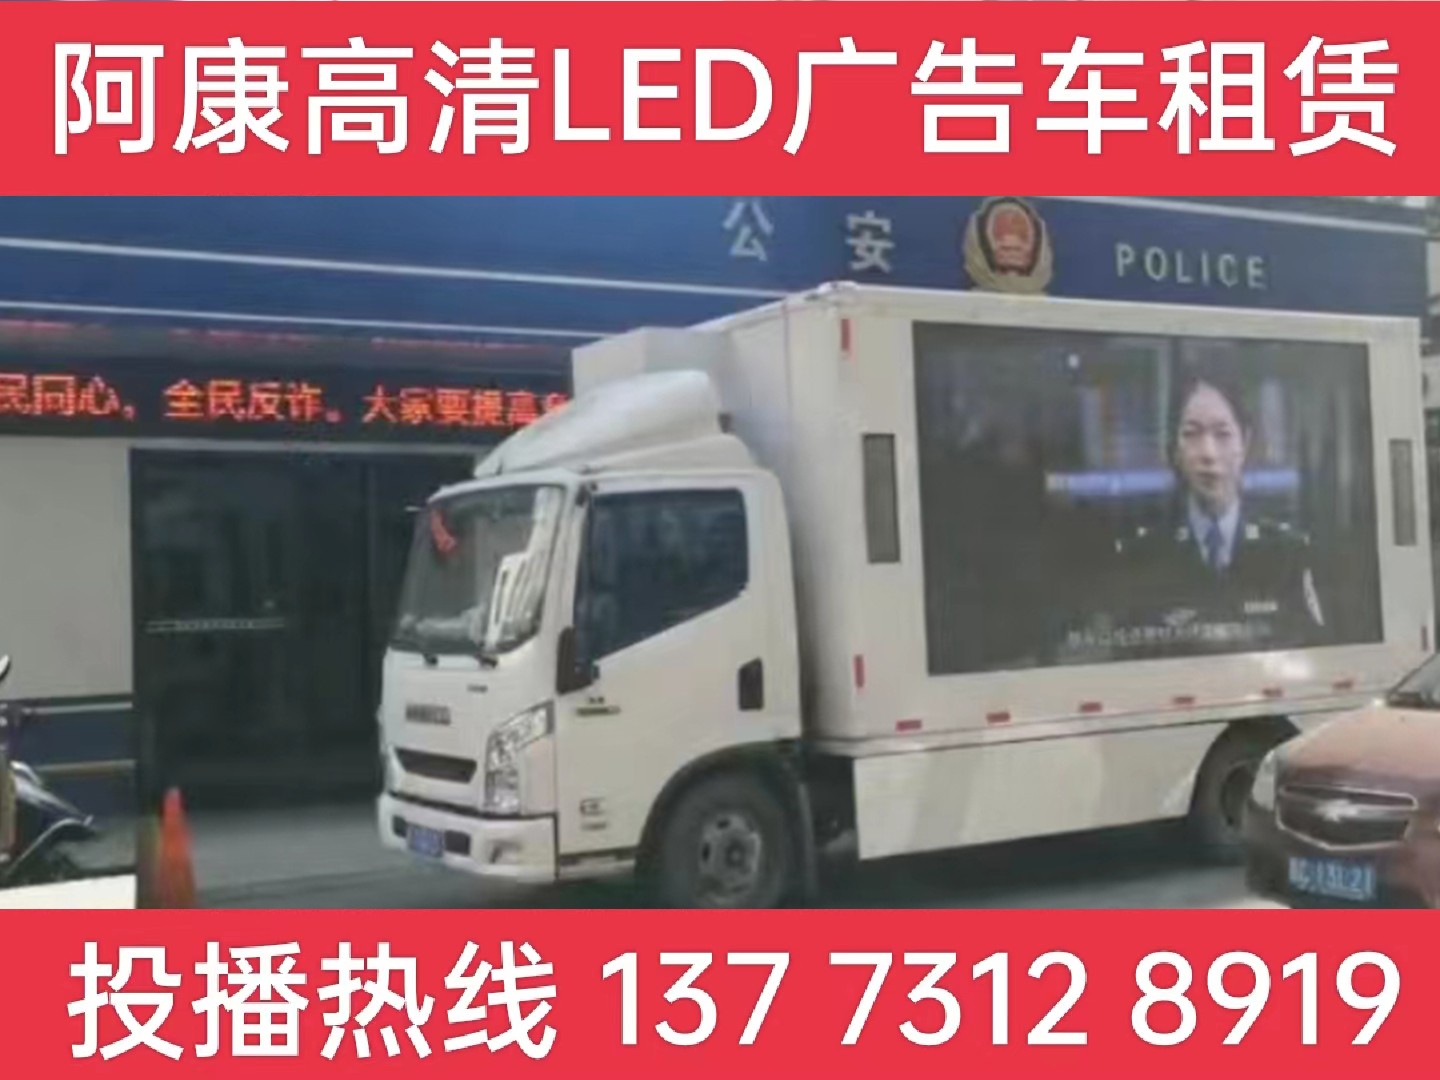 句容LED广告车租赁-反诈宣传